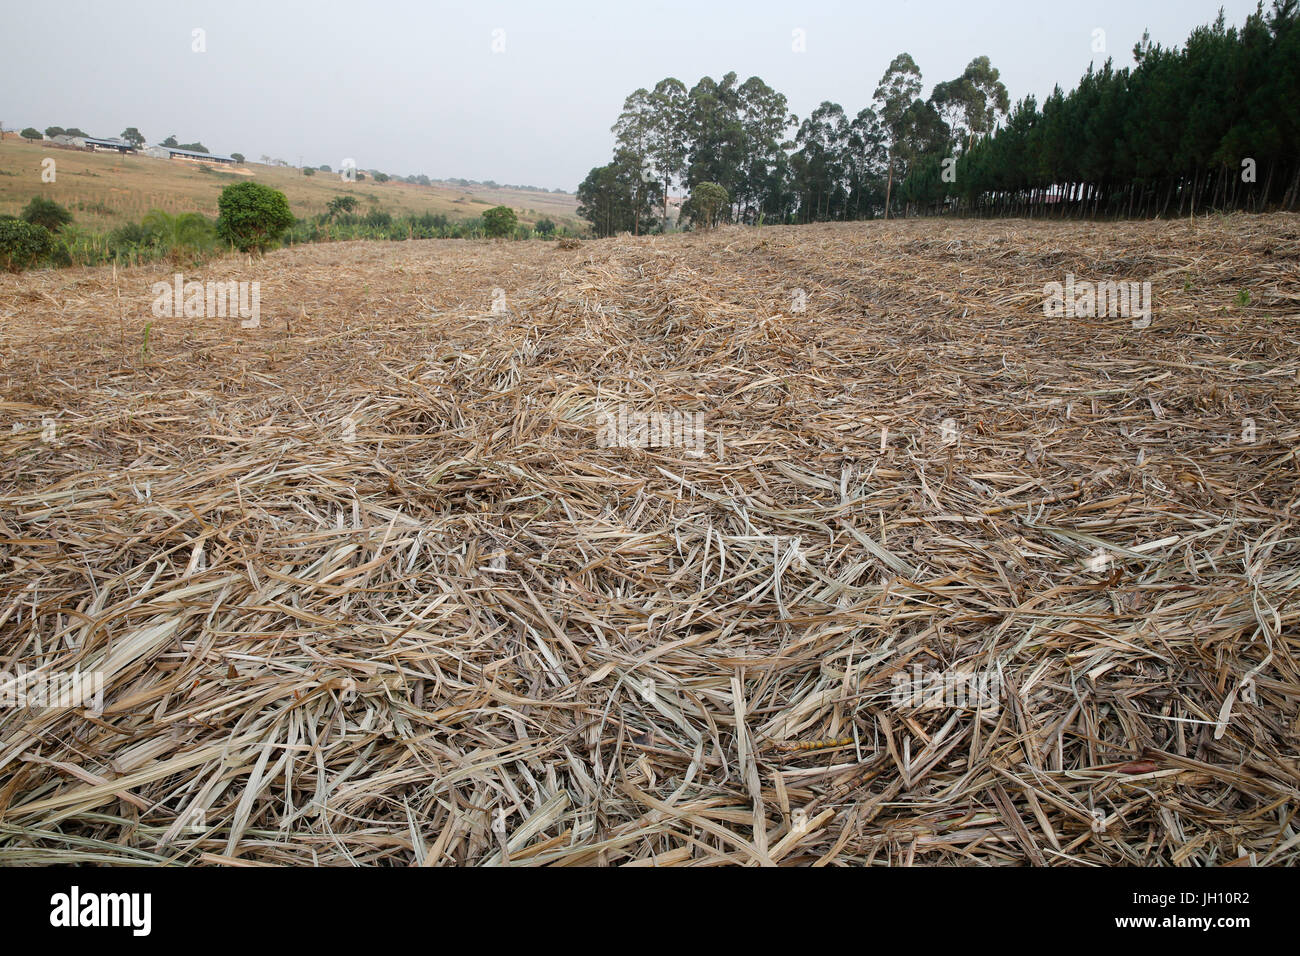 Harvested sugarcane plantation. Uganda. Stock Photo